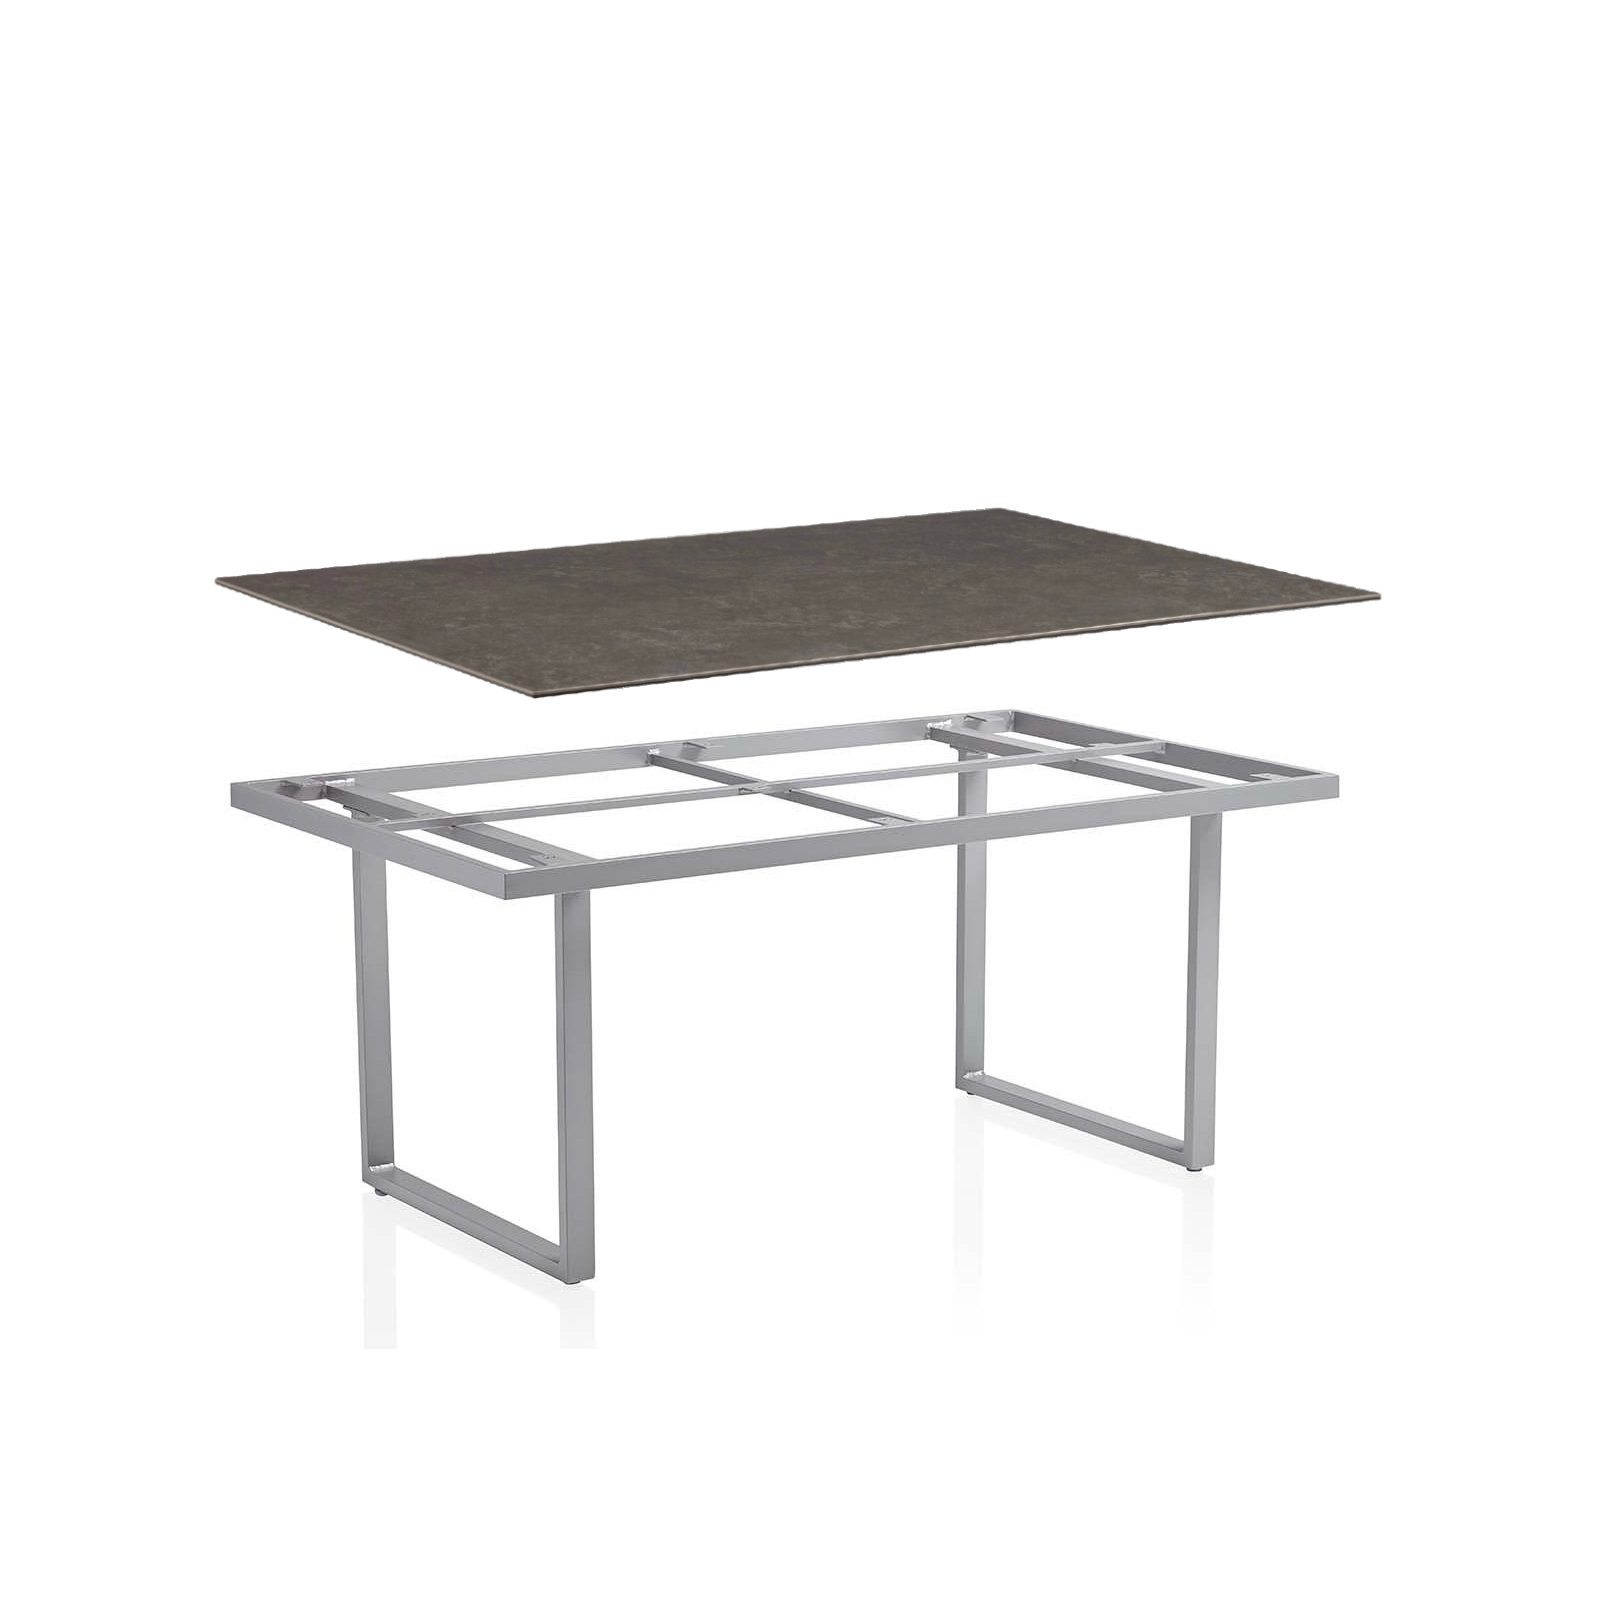 Kettler Tischwelt, Gestell "Skate" Aluminium silber mit frei wählbarer Tischplatte, hier Keramik anthrazit, 160x95 cm, Tischhöhe ca. 68 cm